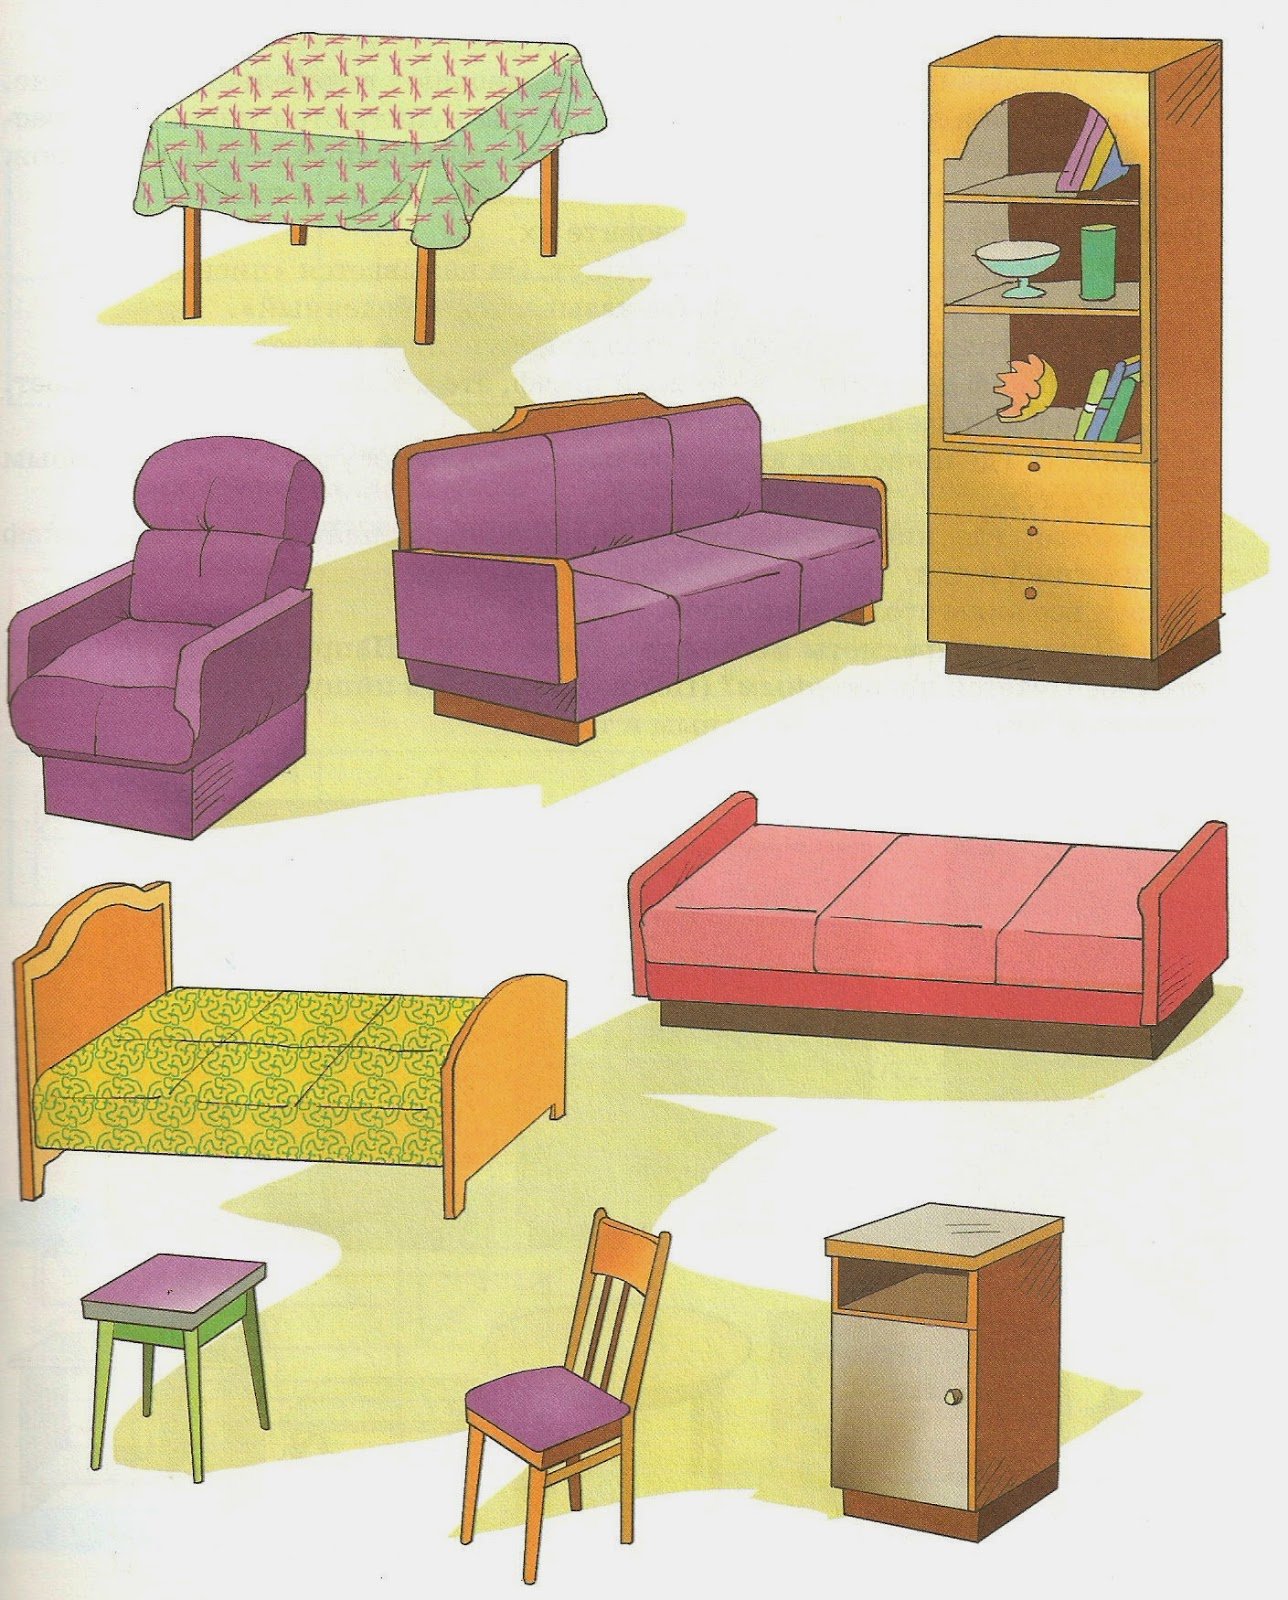 Отдельные предметы мебели, декора и аксессуары для различных комнат